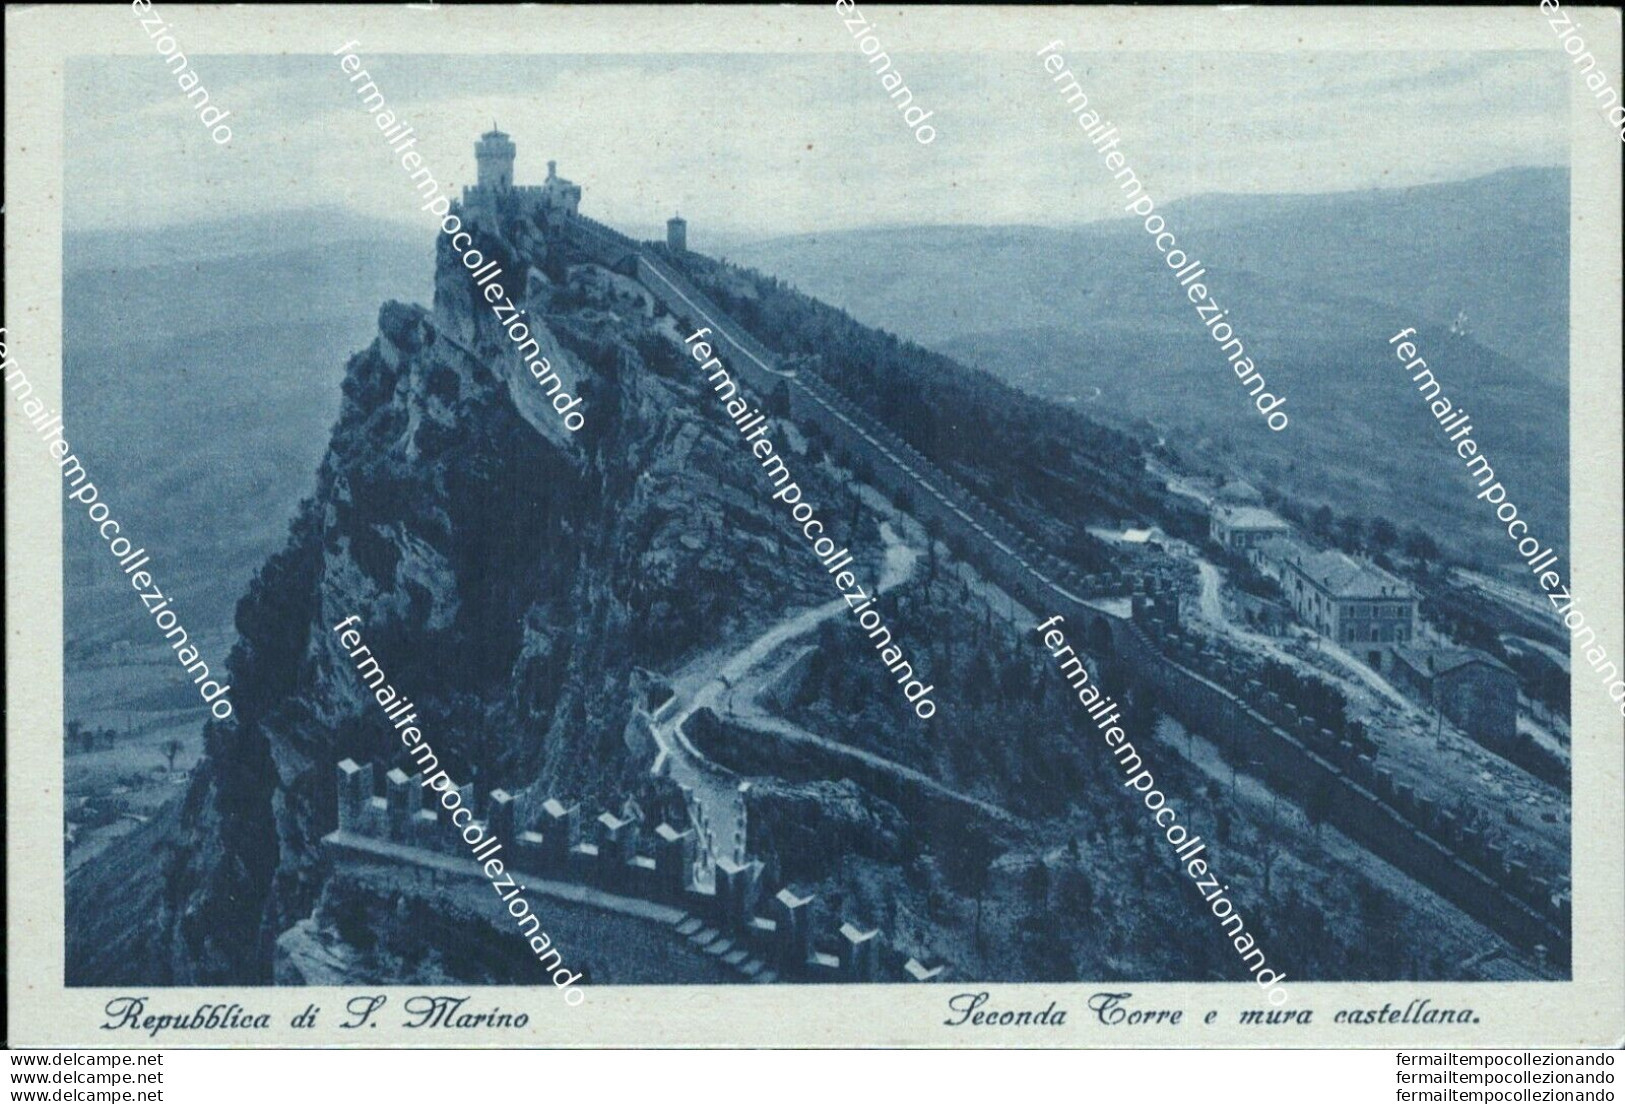 Ba19 Cartolina Repubblica Di San Marino Seconda Torre E Mura Castellana - San Marino